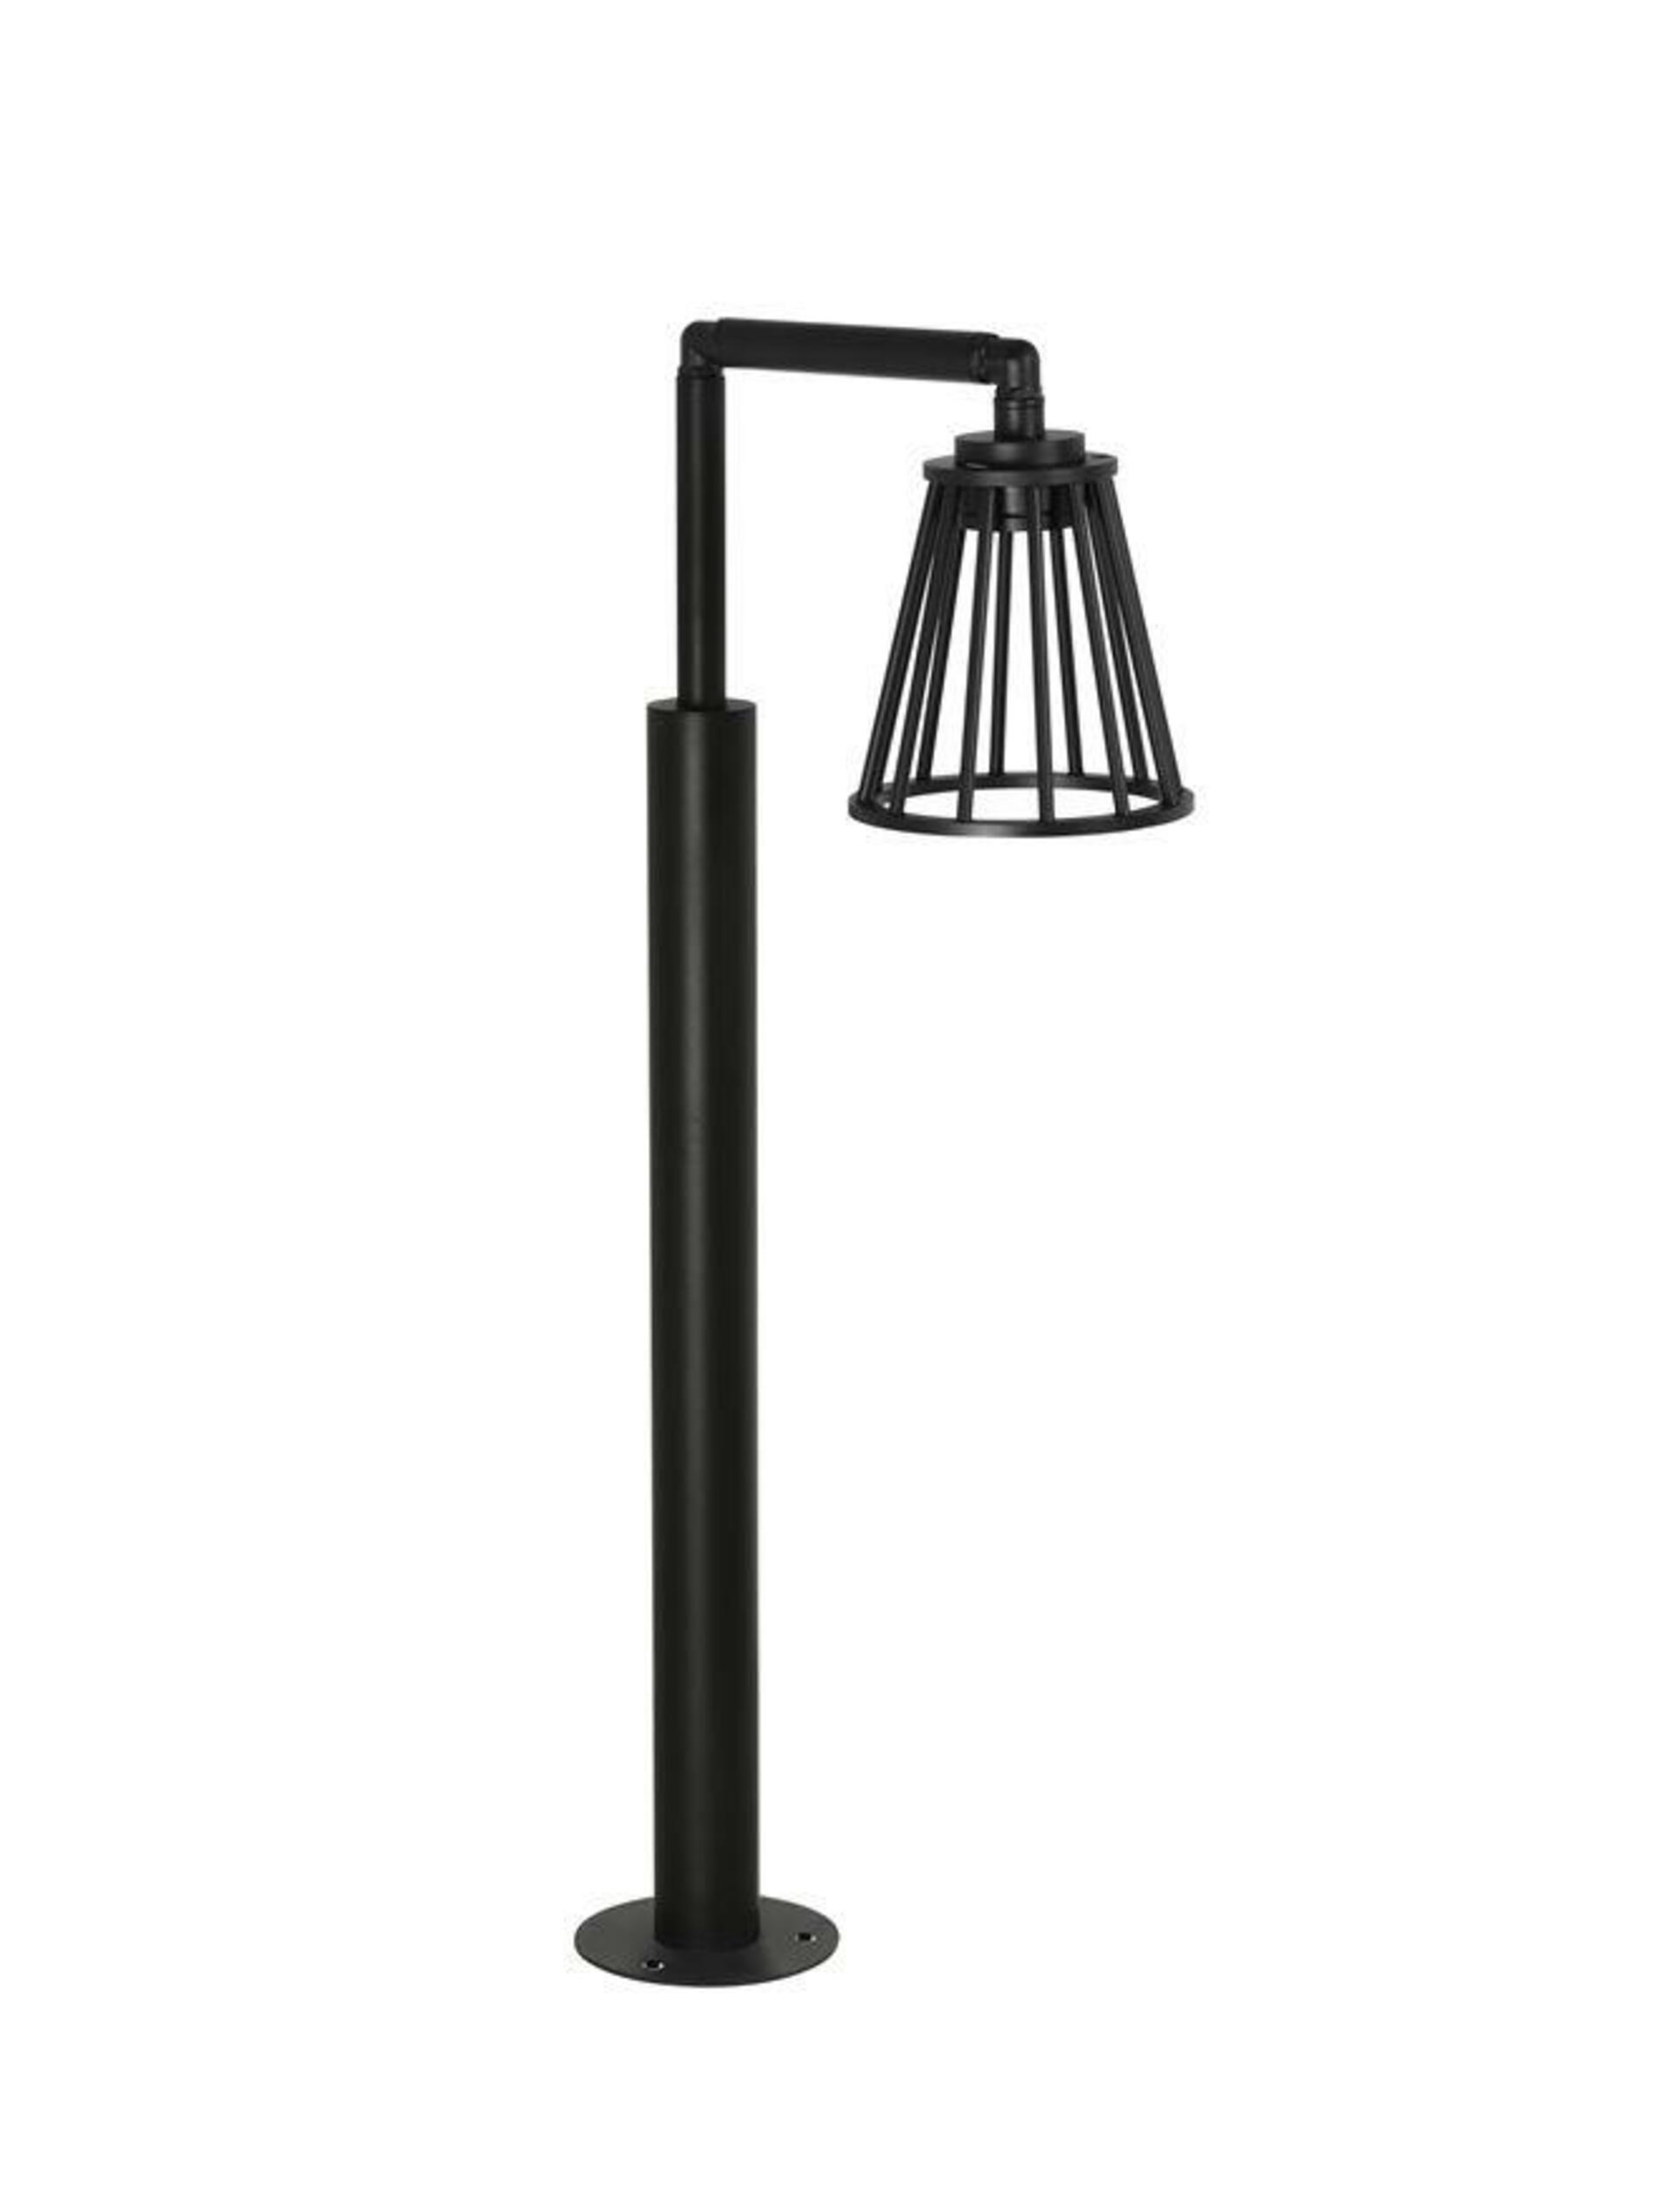 NOVA LUCE venkovní sloupkové svítidlo CARINA černý hliník LED 6W 279.54 lm 3000K 220-240V IP65 9060213